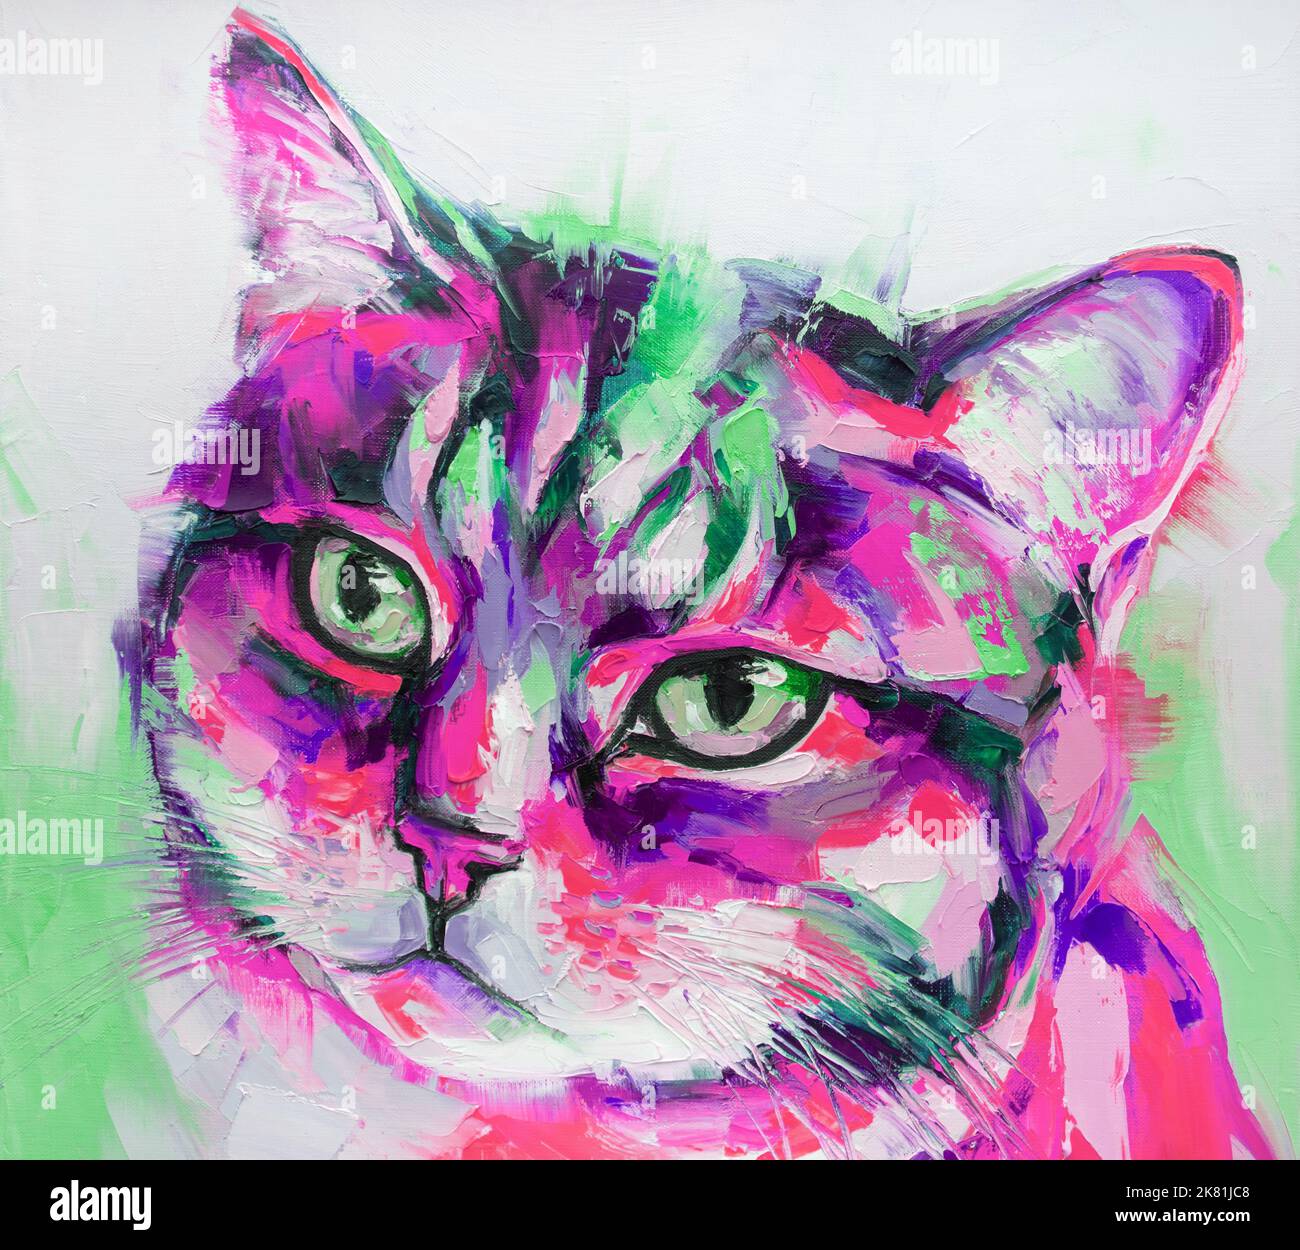 Peinture de portrait de chat d'huile dans des tons multicolores. Peinture abstraite conceptuelle. Gros plan huile de peinture et couteau à palette sur toile. Banque D'Images